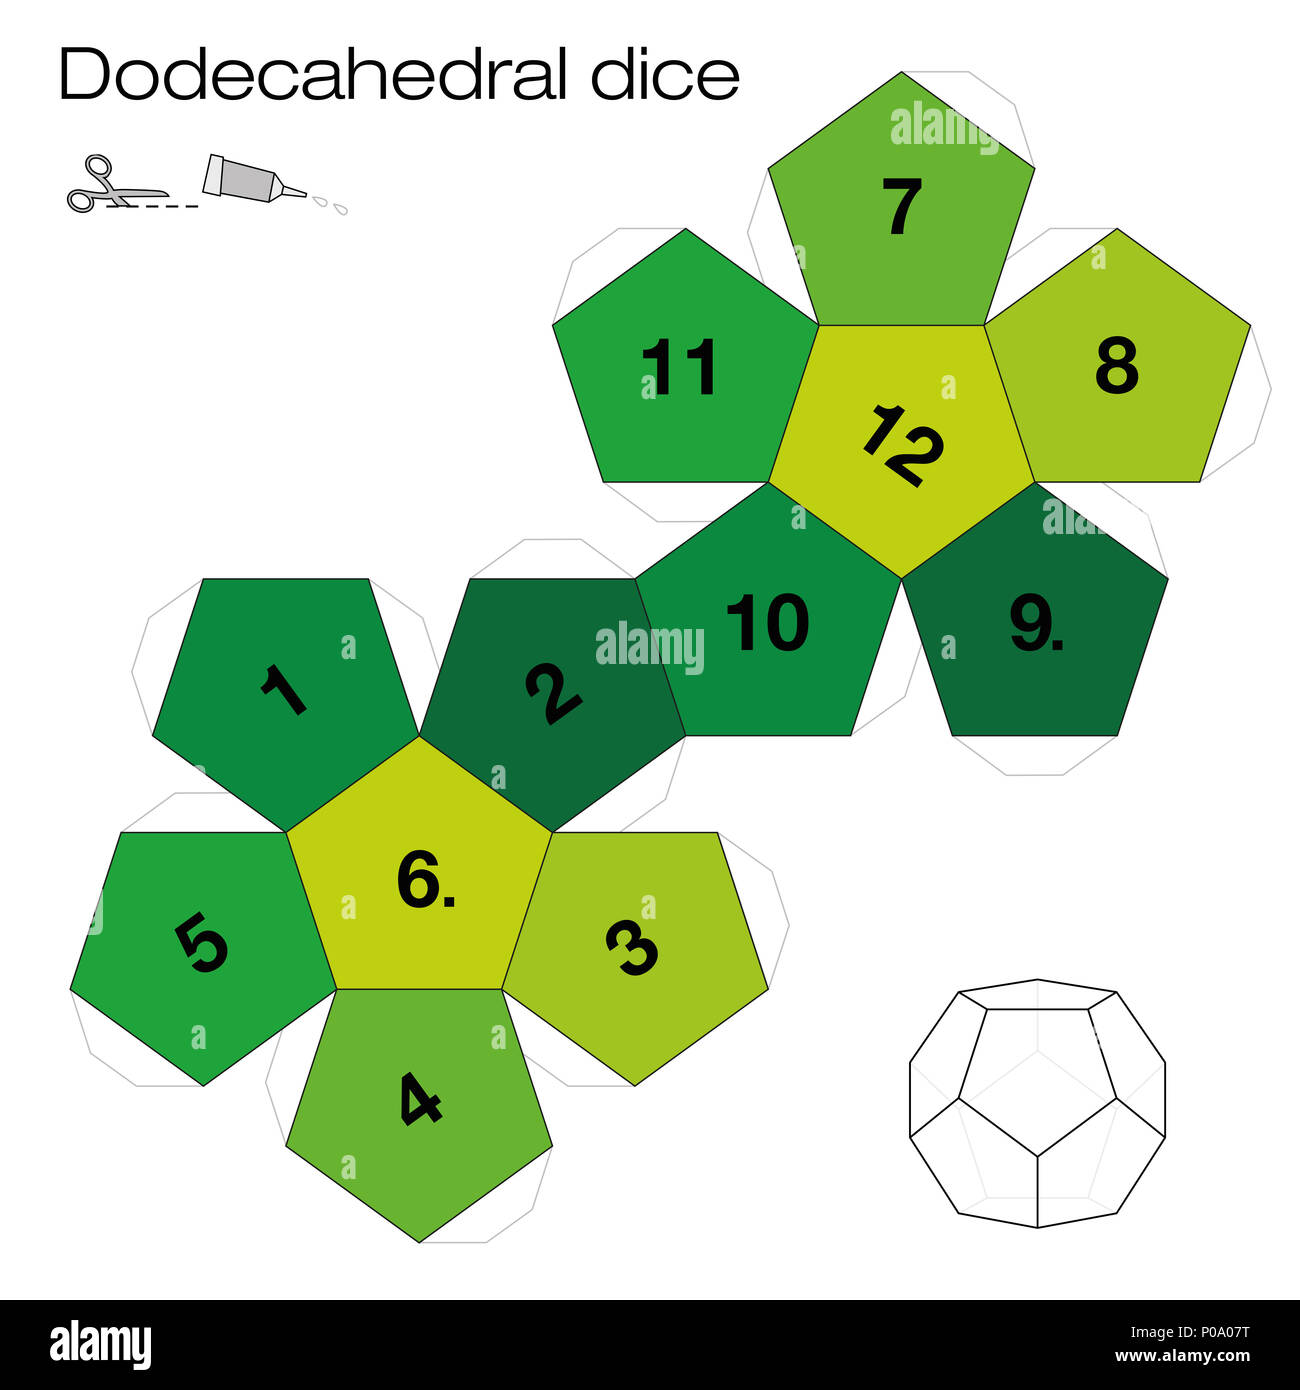 Modello di dodecaedro, dodecahedral dice - uno dei cinque solidi platonici - fare un 3d voce con dodici lati al di fuori della rete e giocare a dadi. Foto Stock